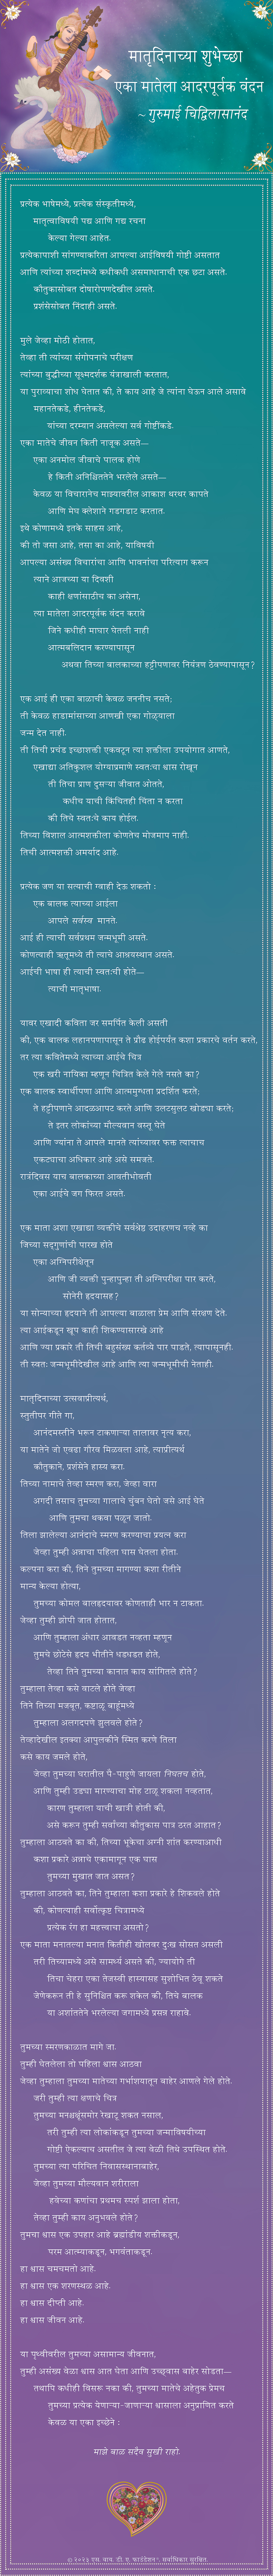 Marathi Poem